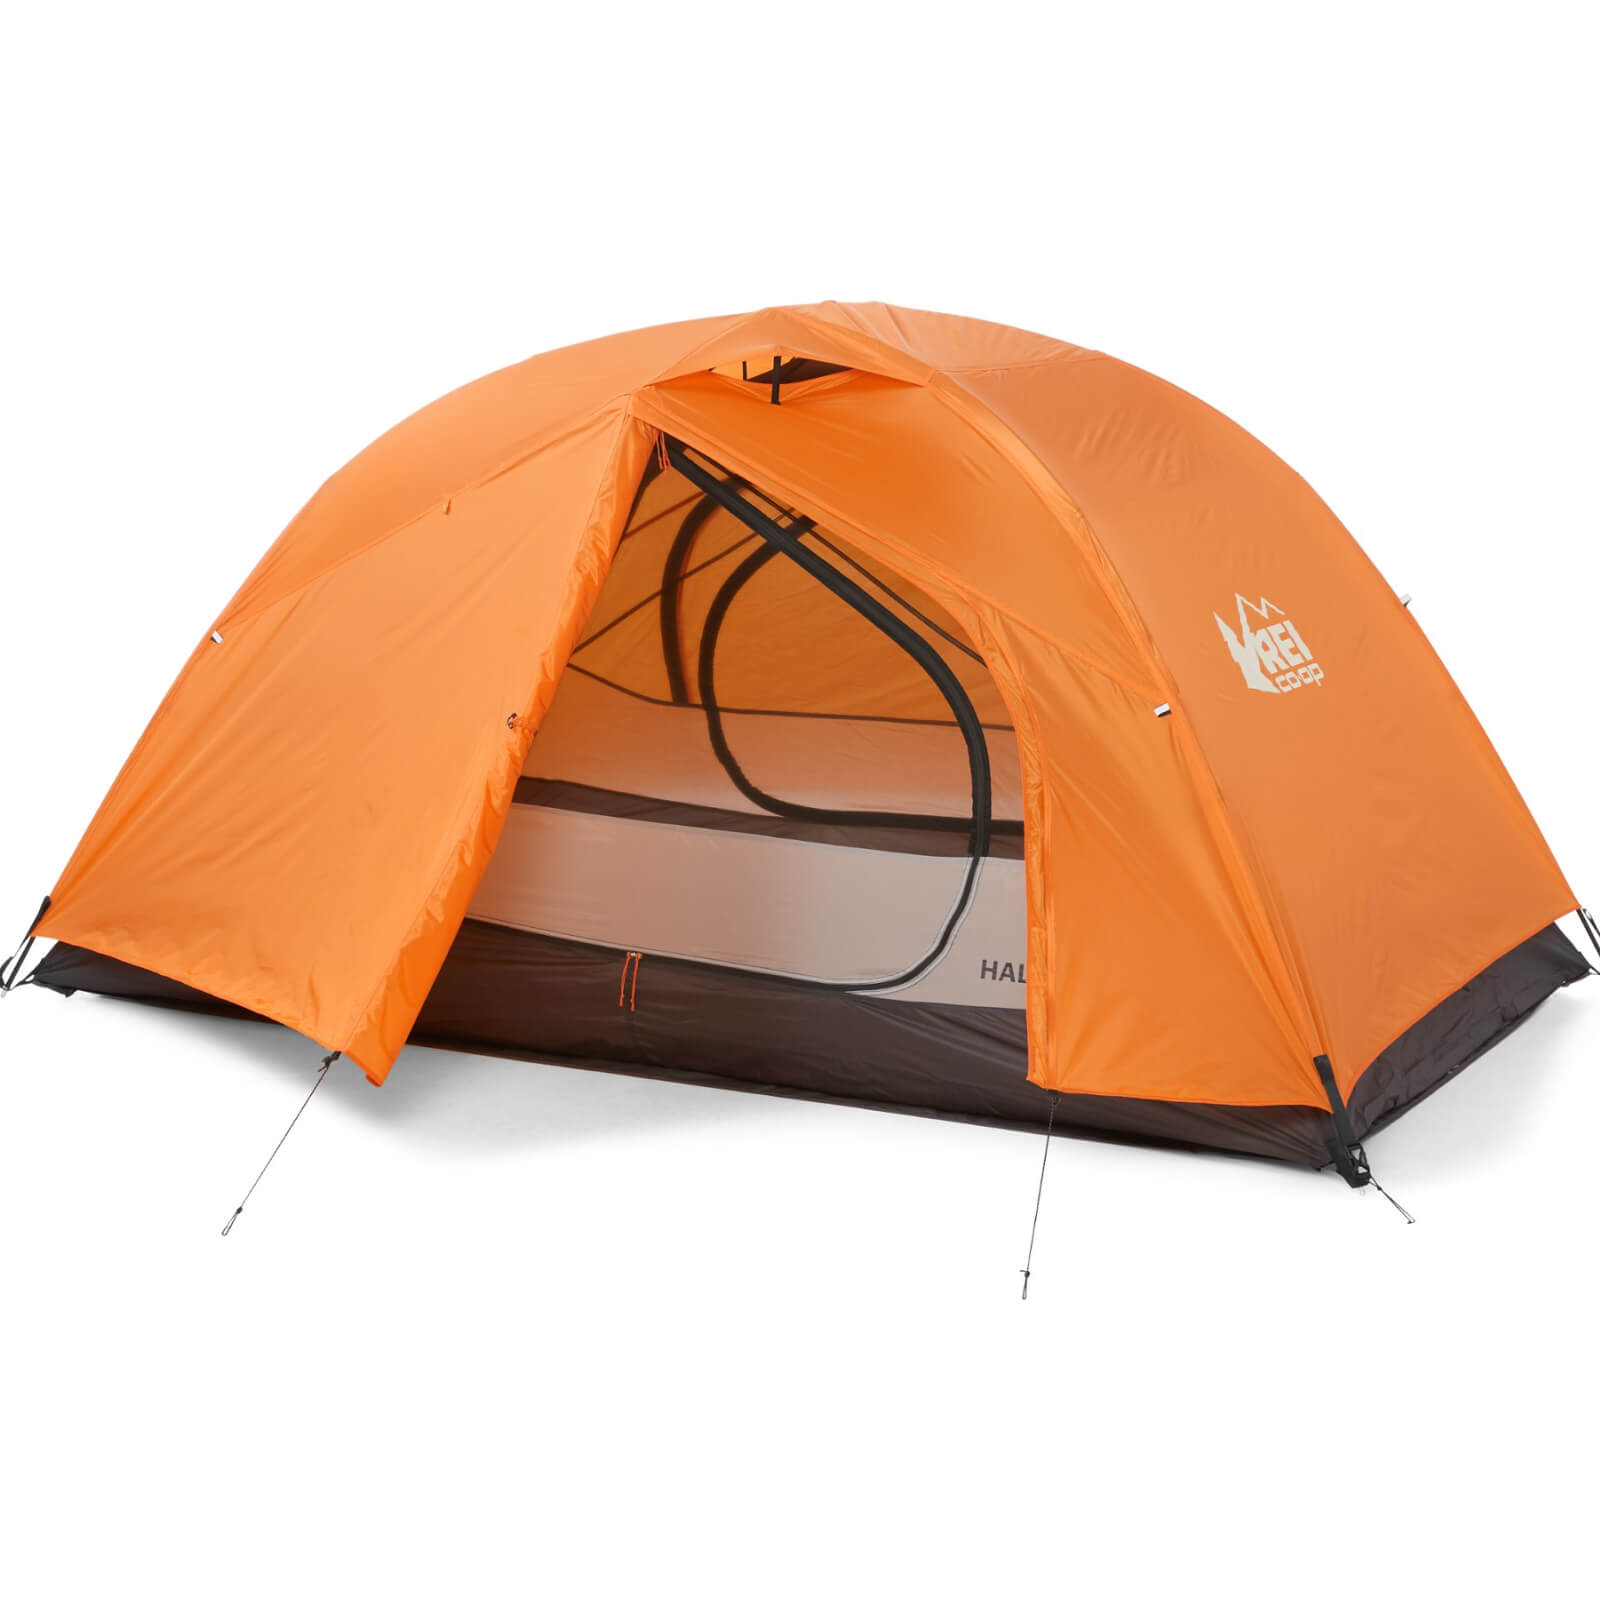 REI Co-op Half Dome SL 2+ Tent